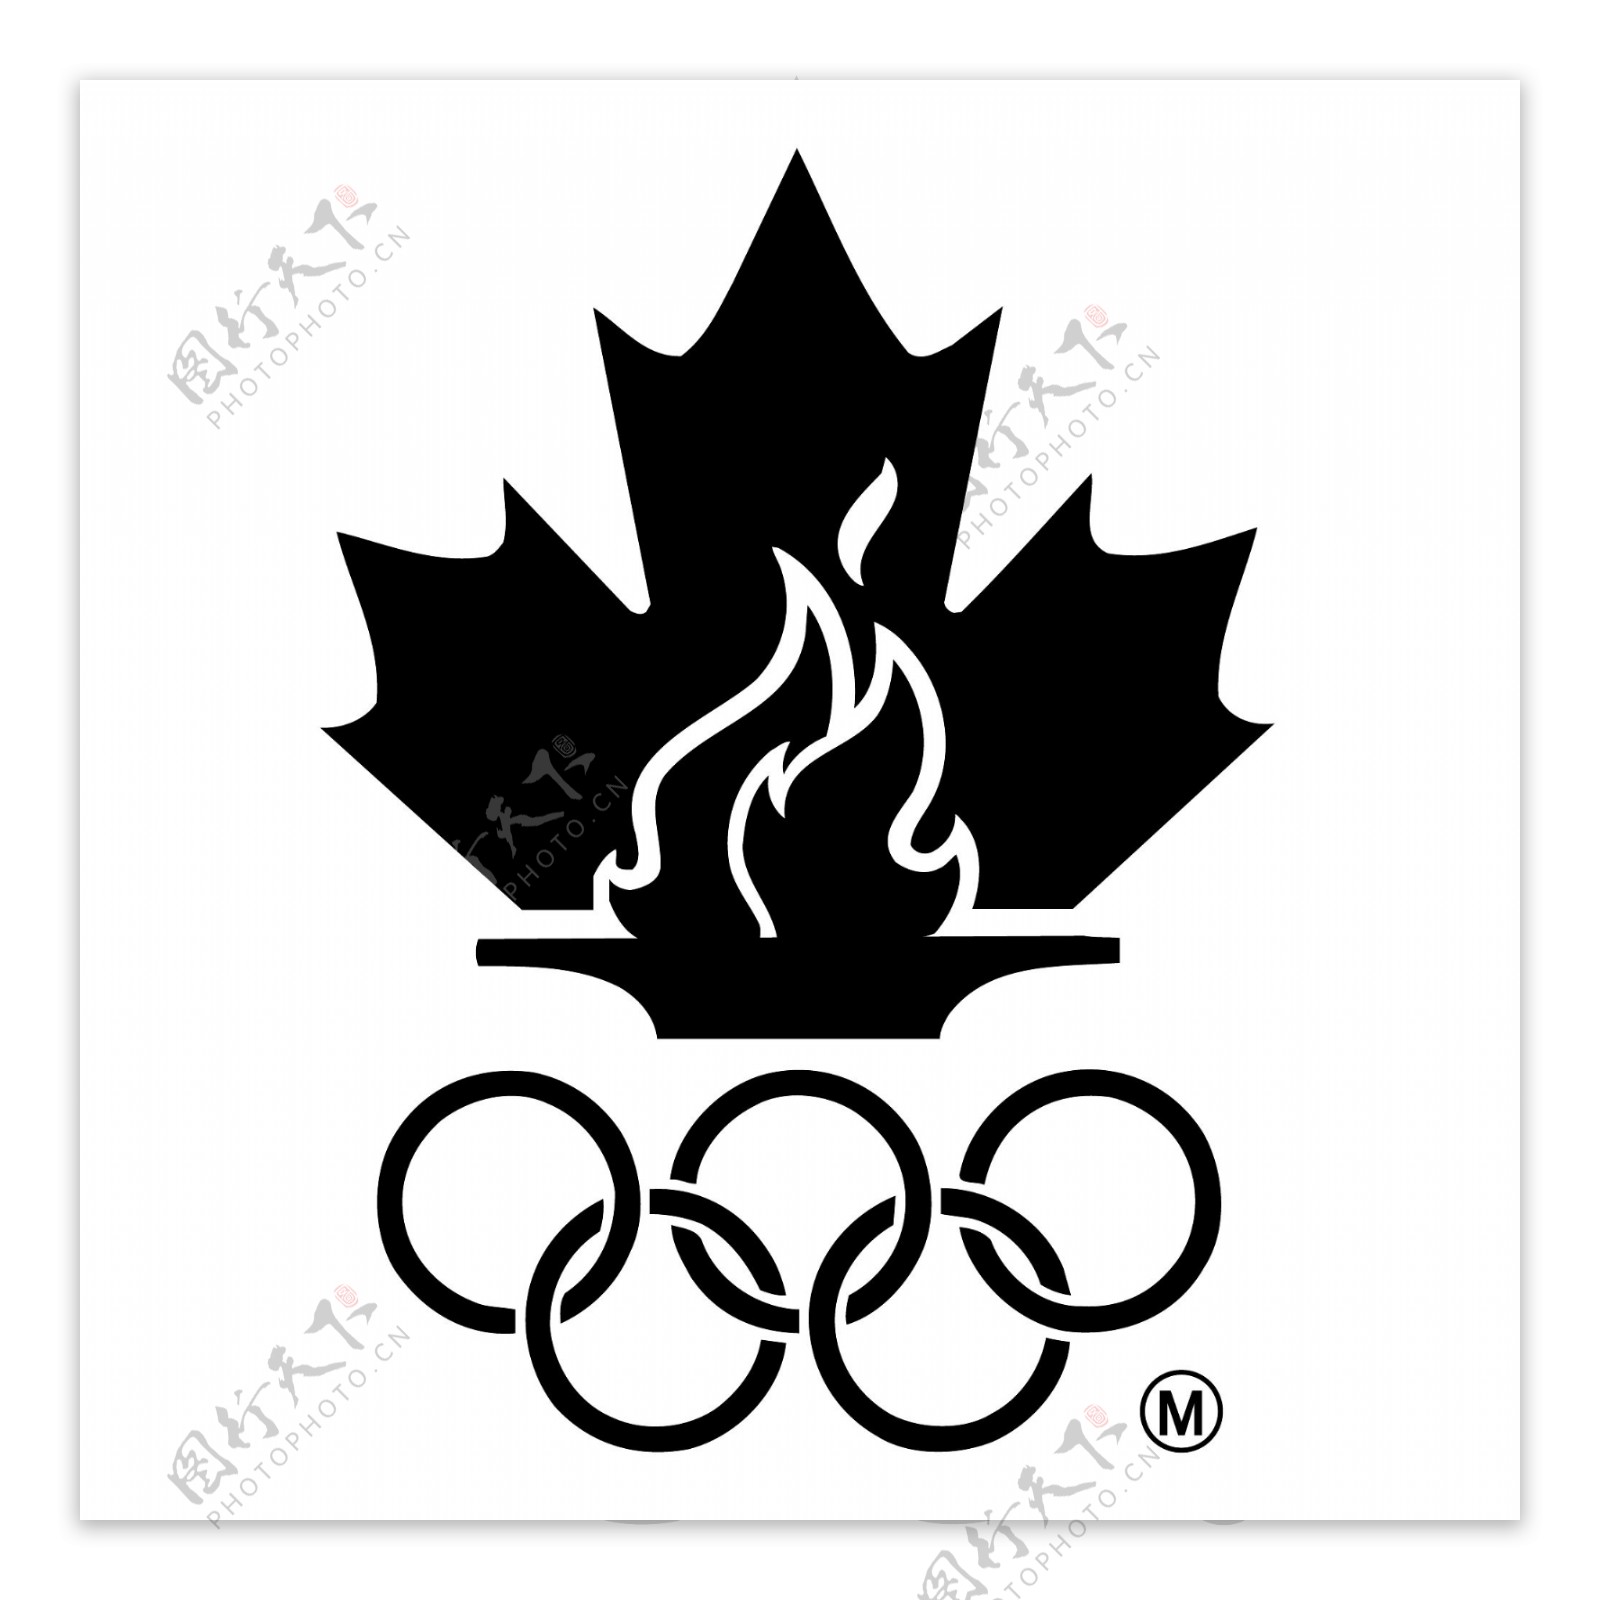 加拿大奥运代表队